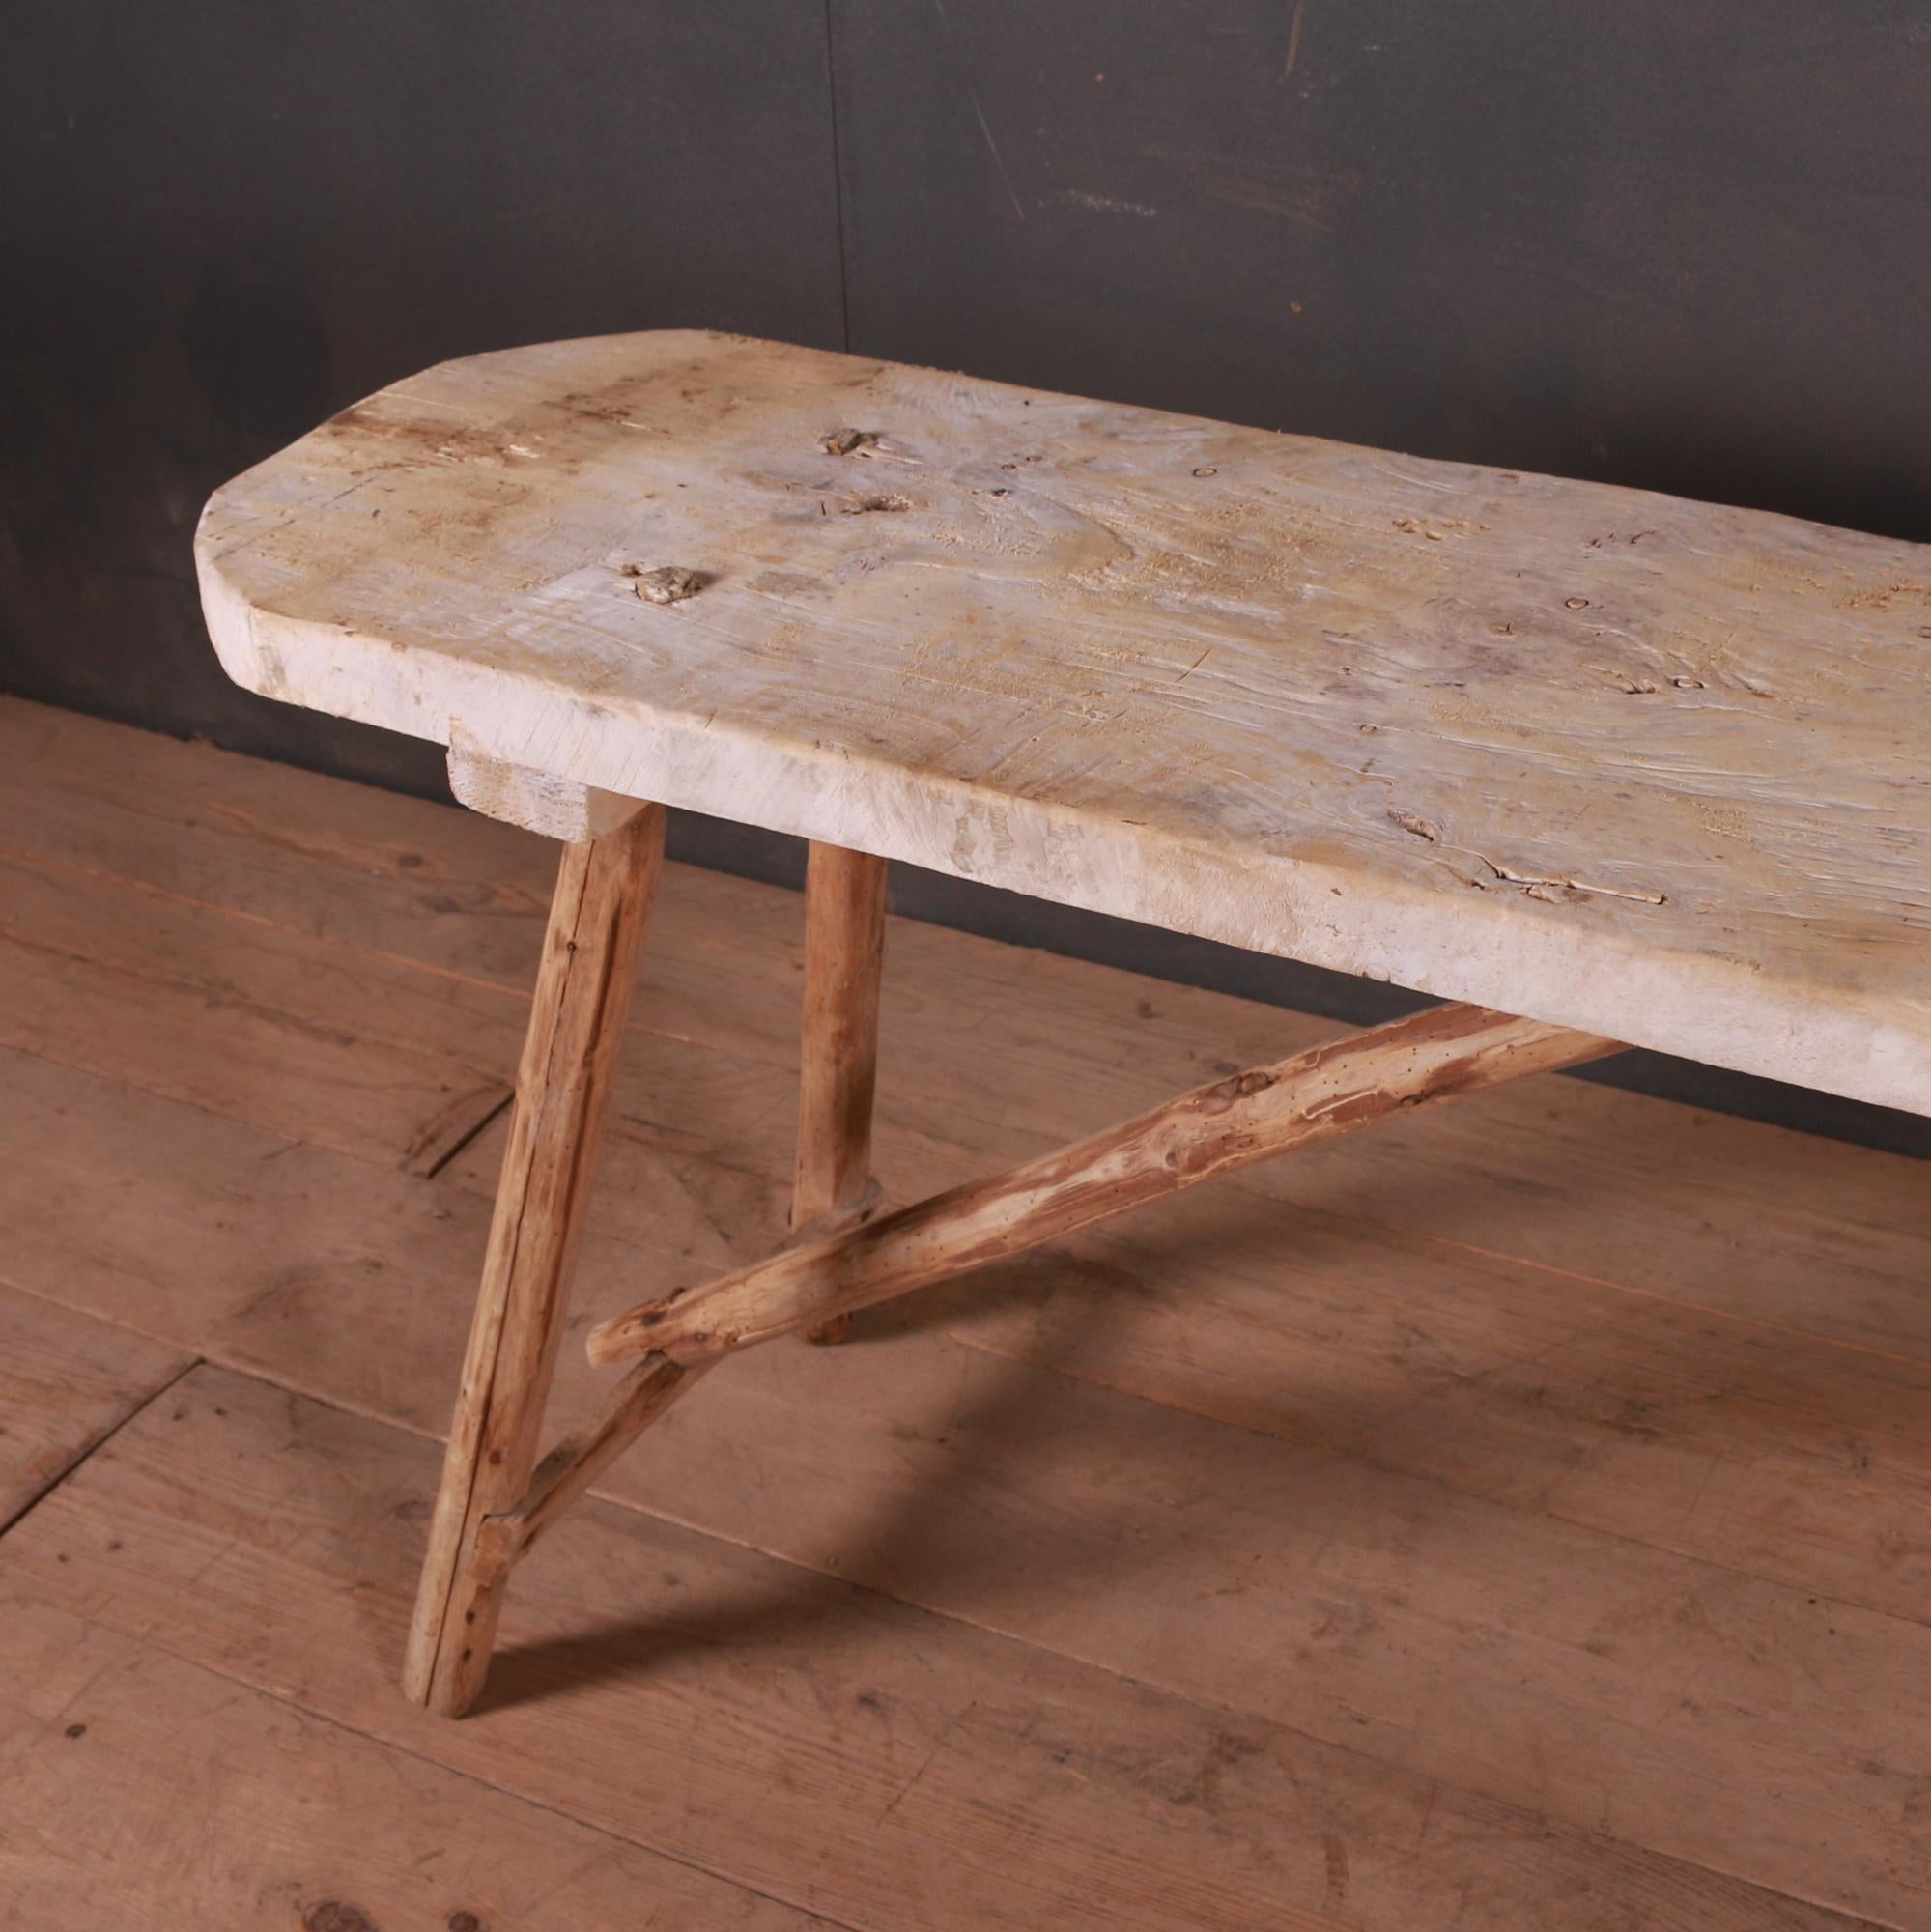 Intéressante table à tréteaux en peuplier et chêne frotté du 19e siècle. 1880.

La profondeur du plateau est de 15